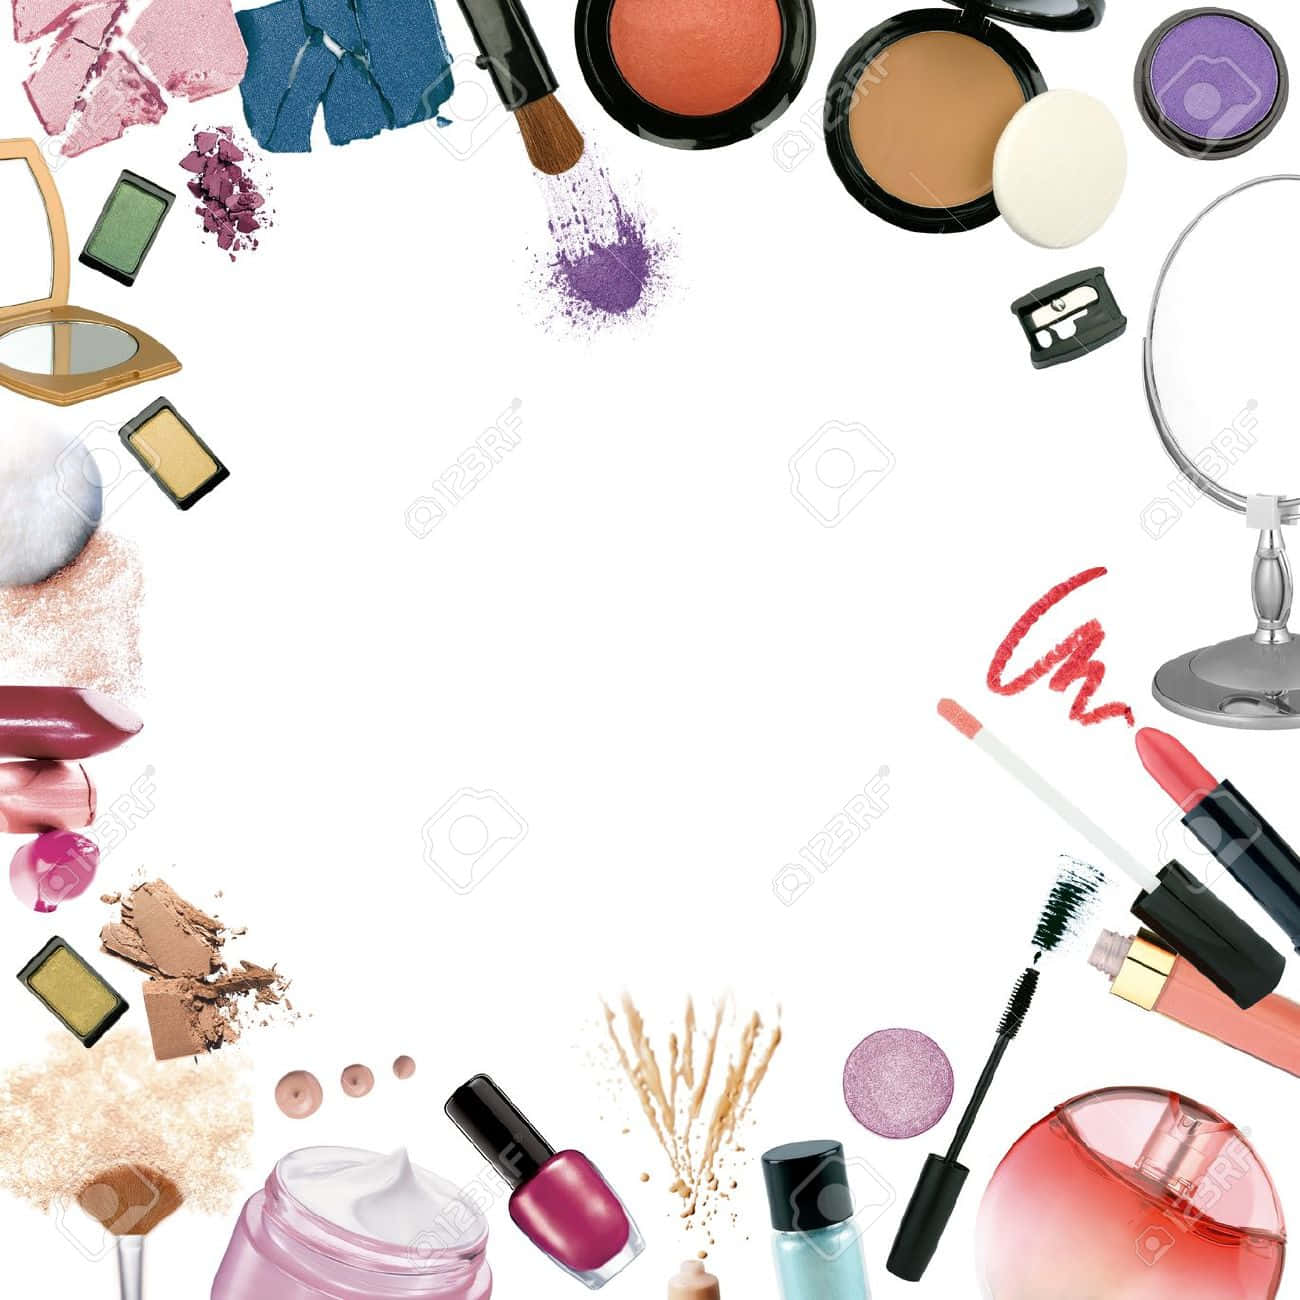 A Diverse Assortment Of Makeup Essentials On A Sleek Black Background.